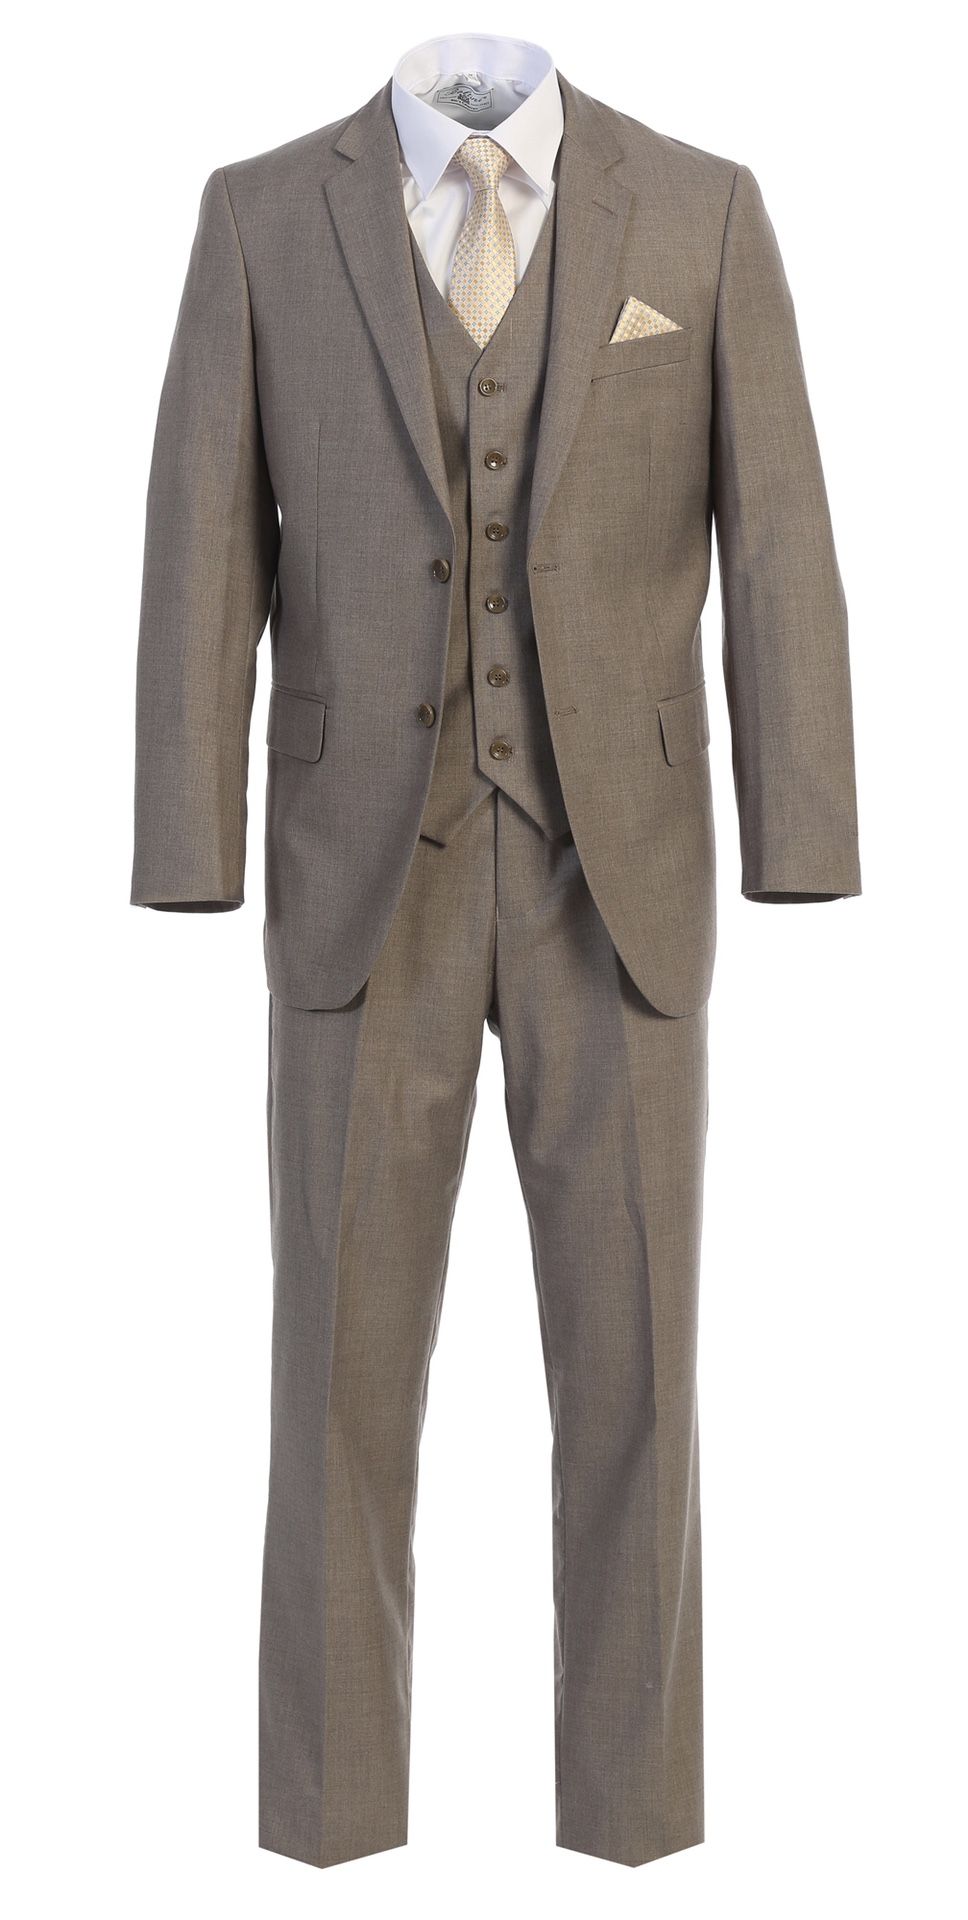 Men’s Premium Modern Fit Sand Color Suit on SALE!